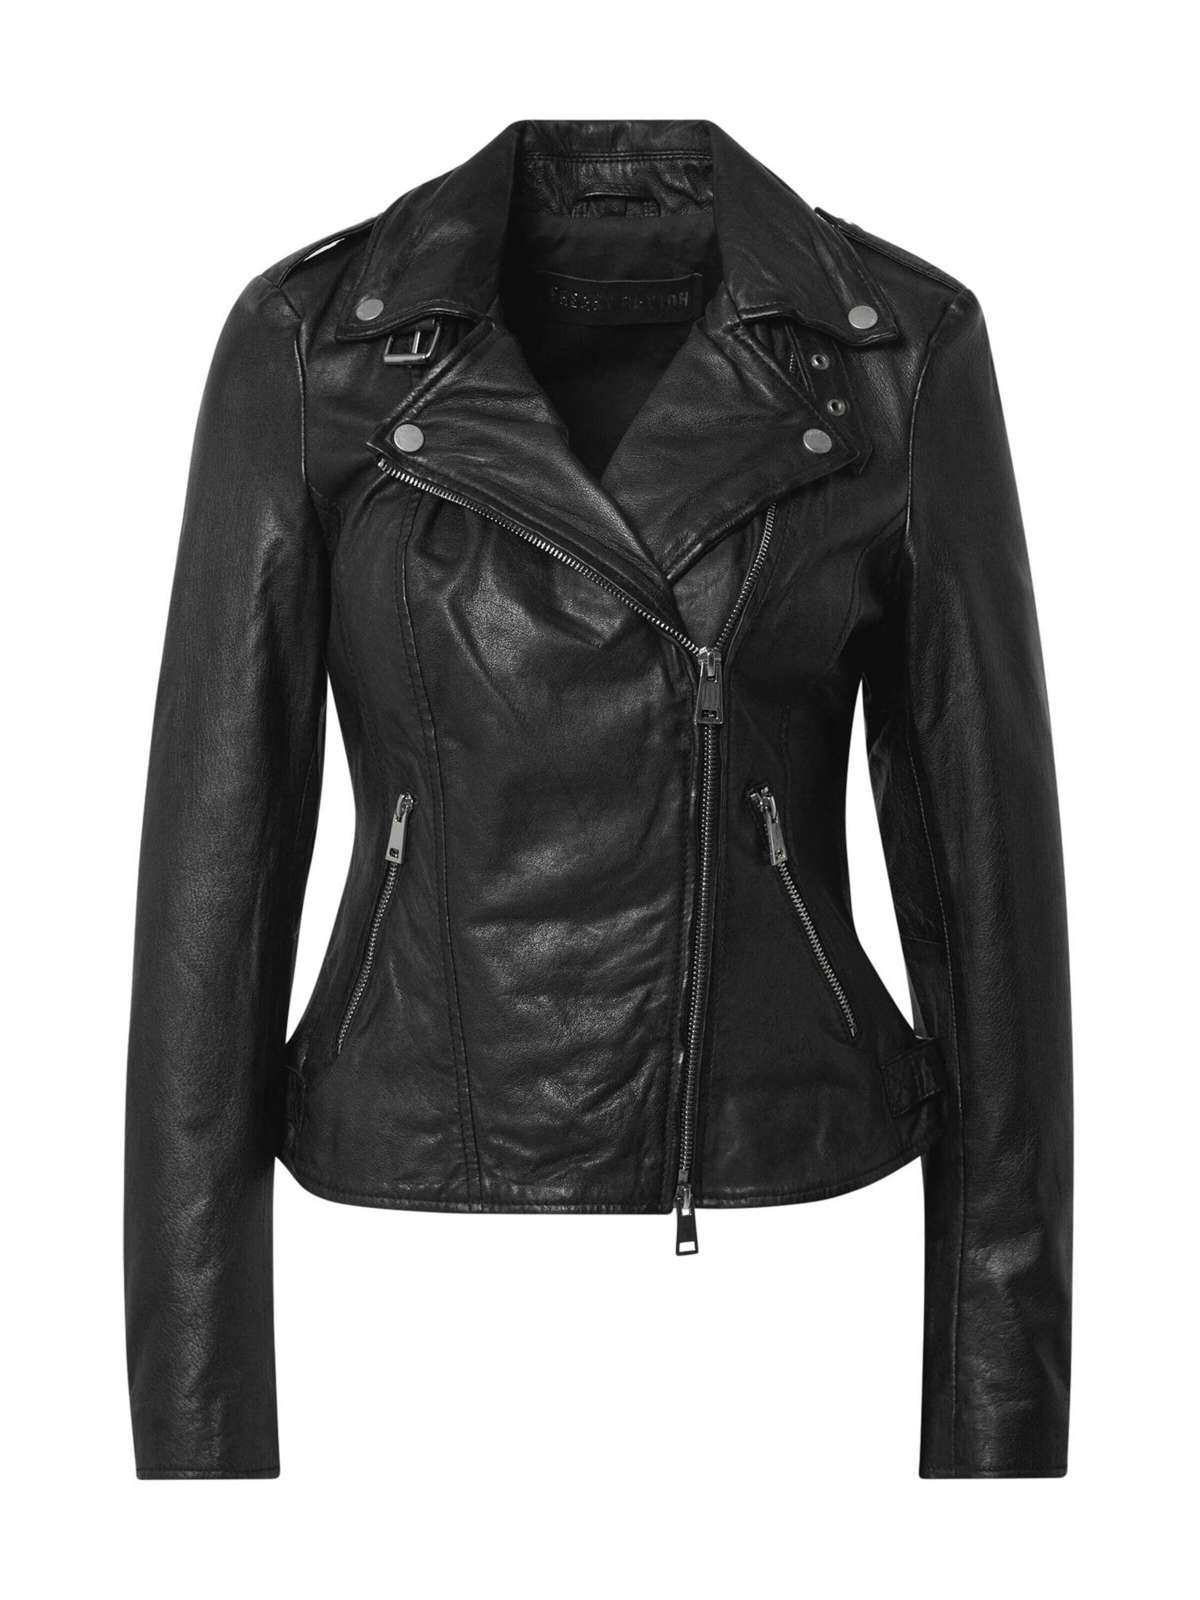 Кожаная куртка New Undress Me!-байкерская куртка FN с классными деталями на молнии